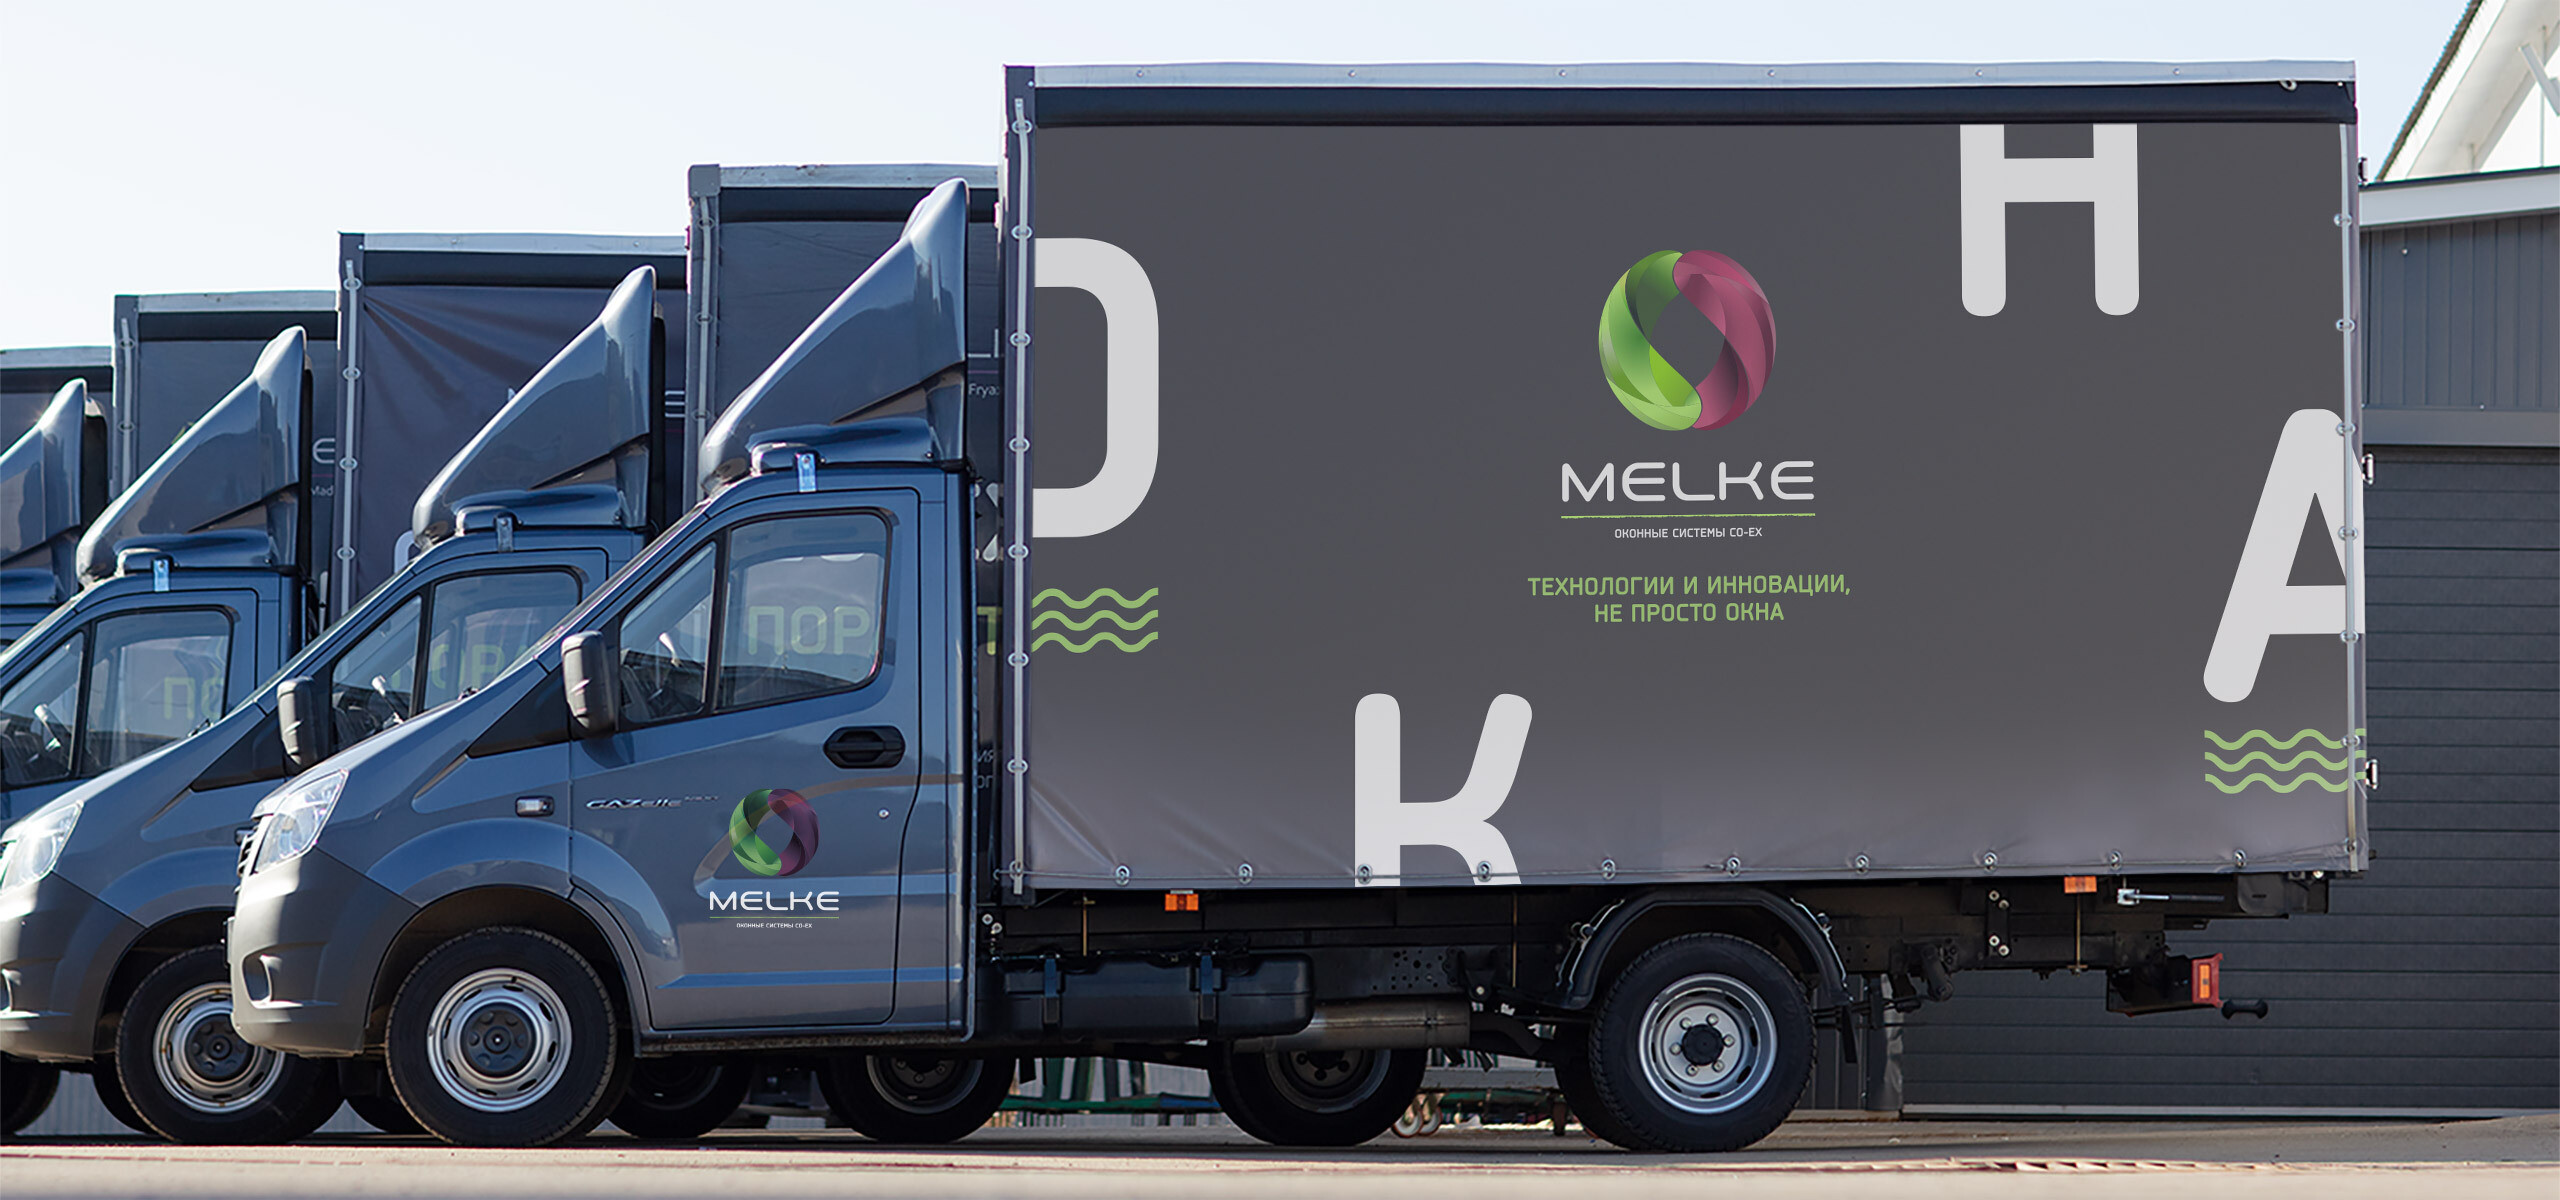 Фирменная грузовая машина с логотипом Melke везет пластиковые окна клиенту.